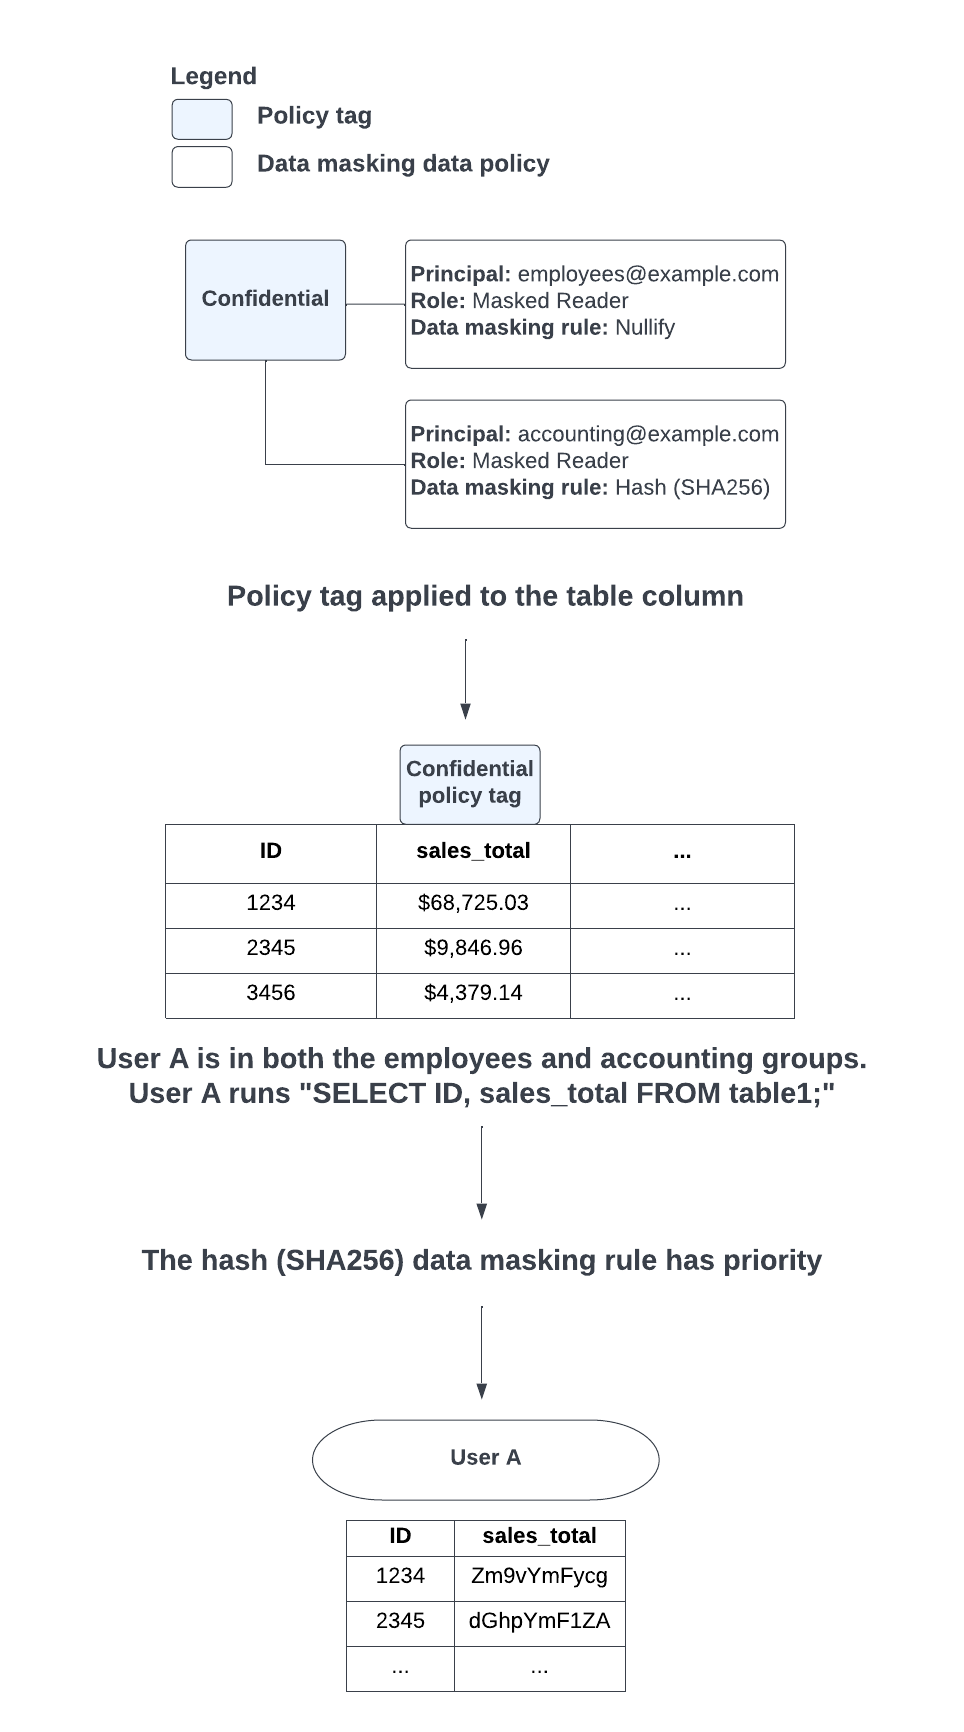 Quando si verifica un conflitto tra l'applicazione delle regole di mascheramento dei dati nullify e dell'hash (SHA-256) a causa dei gruppi di cui fa parte un utente, viene data la priorità alla regola di mascheramento dei dati hash (SHA-256).